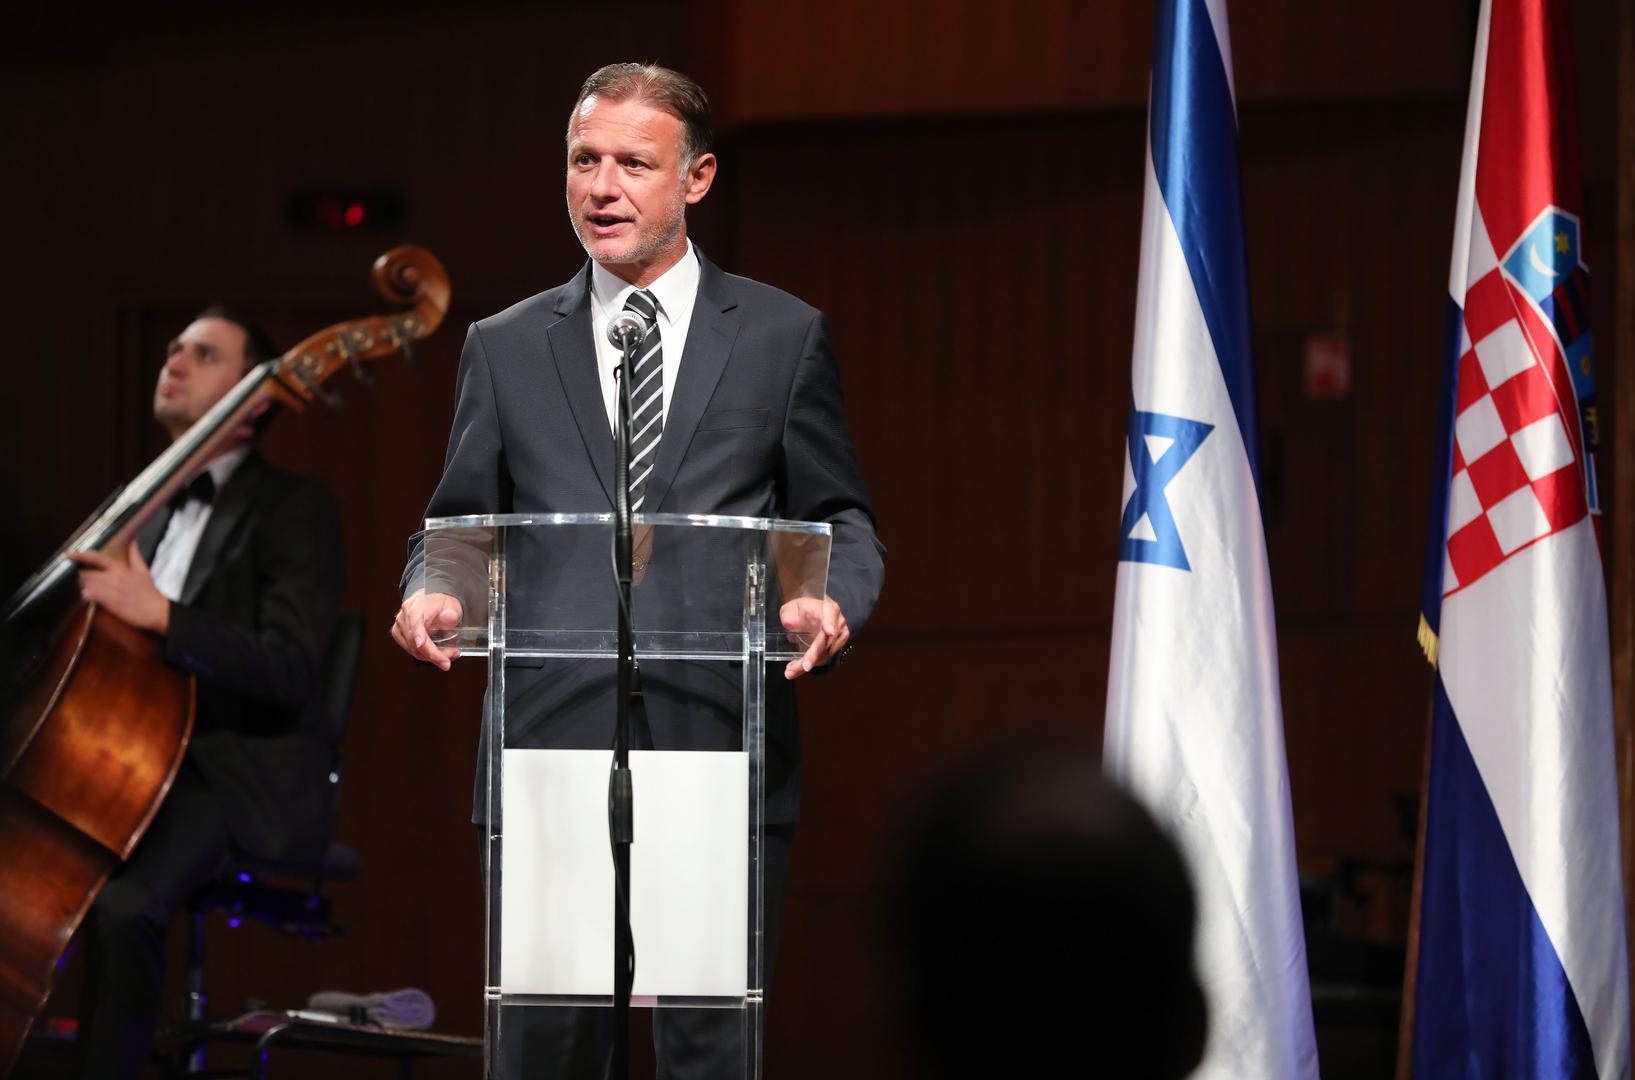 Na koncertu su govor održali i predsjednik Hrvatskog sabora Gordan Jandroković, kao i Gary Koren, veleposlanik Izraela, te Dragan Primorac.